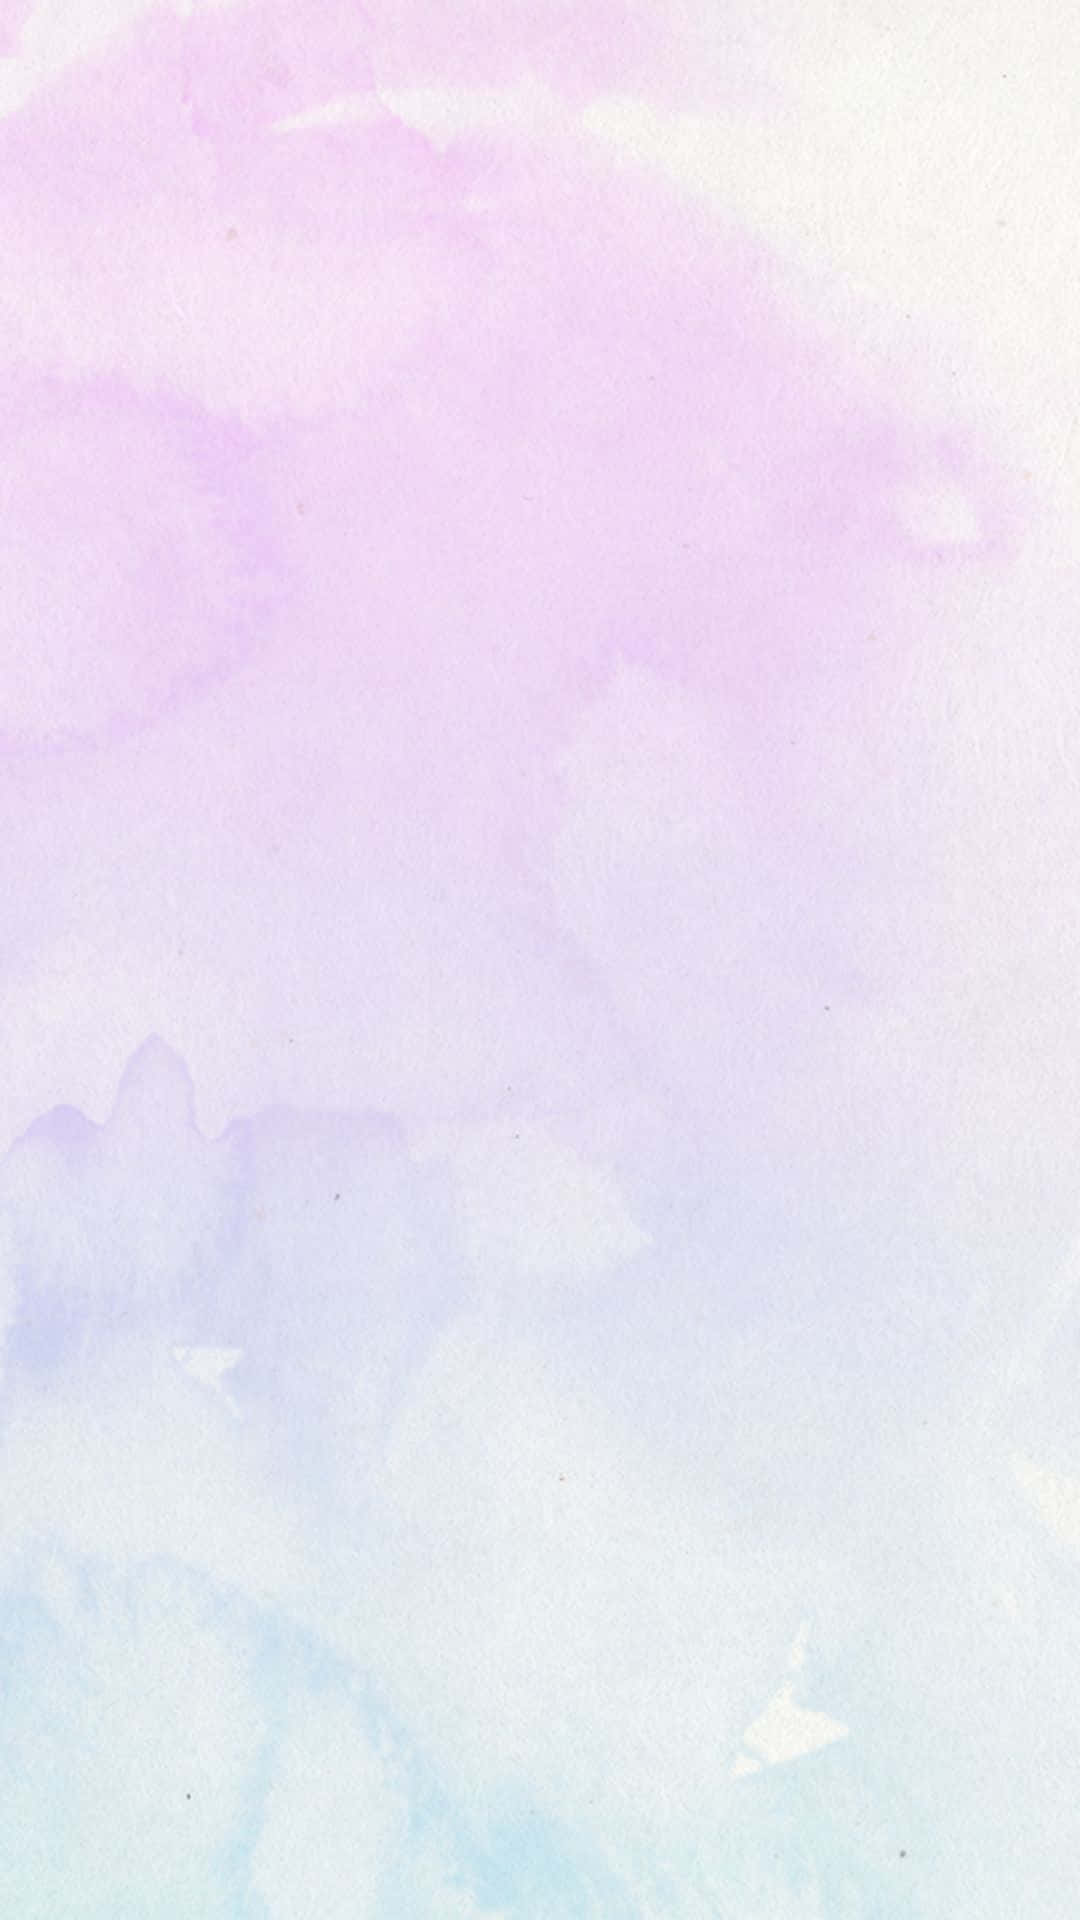 Ästhetischelila Pastell-iphone-wasserfarbenkunst Wallpaper